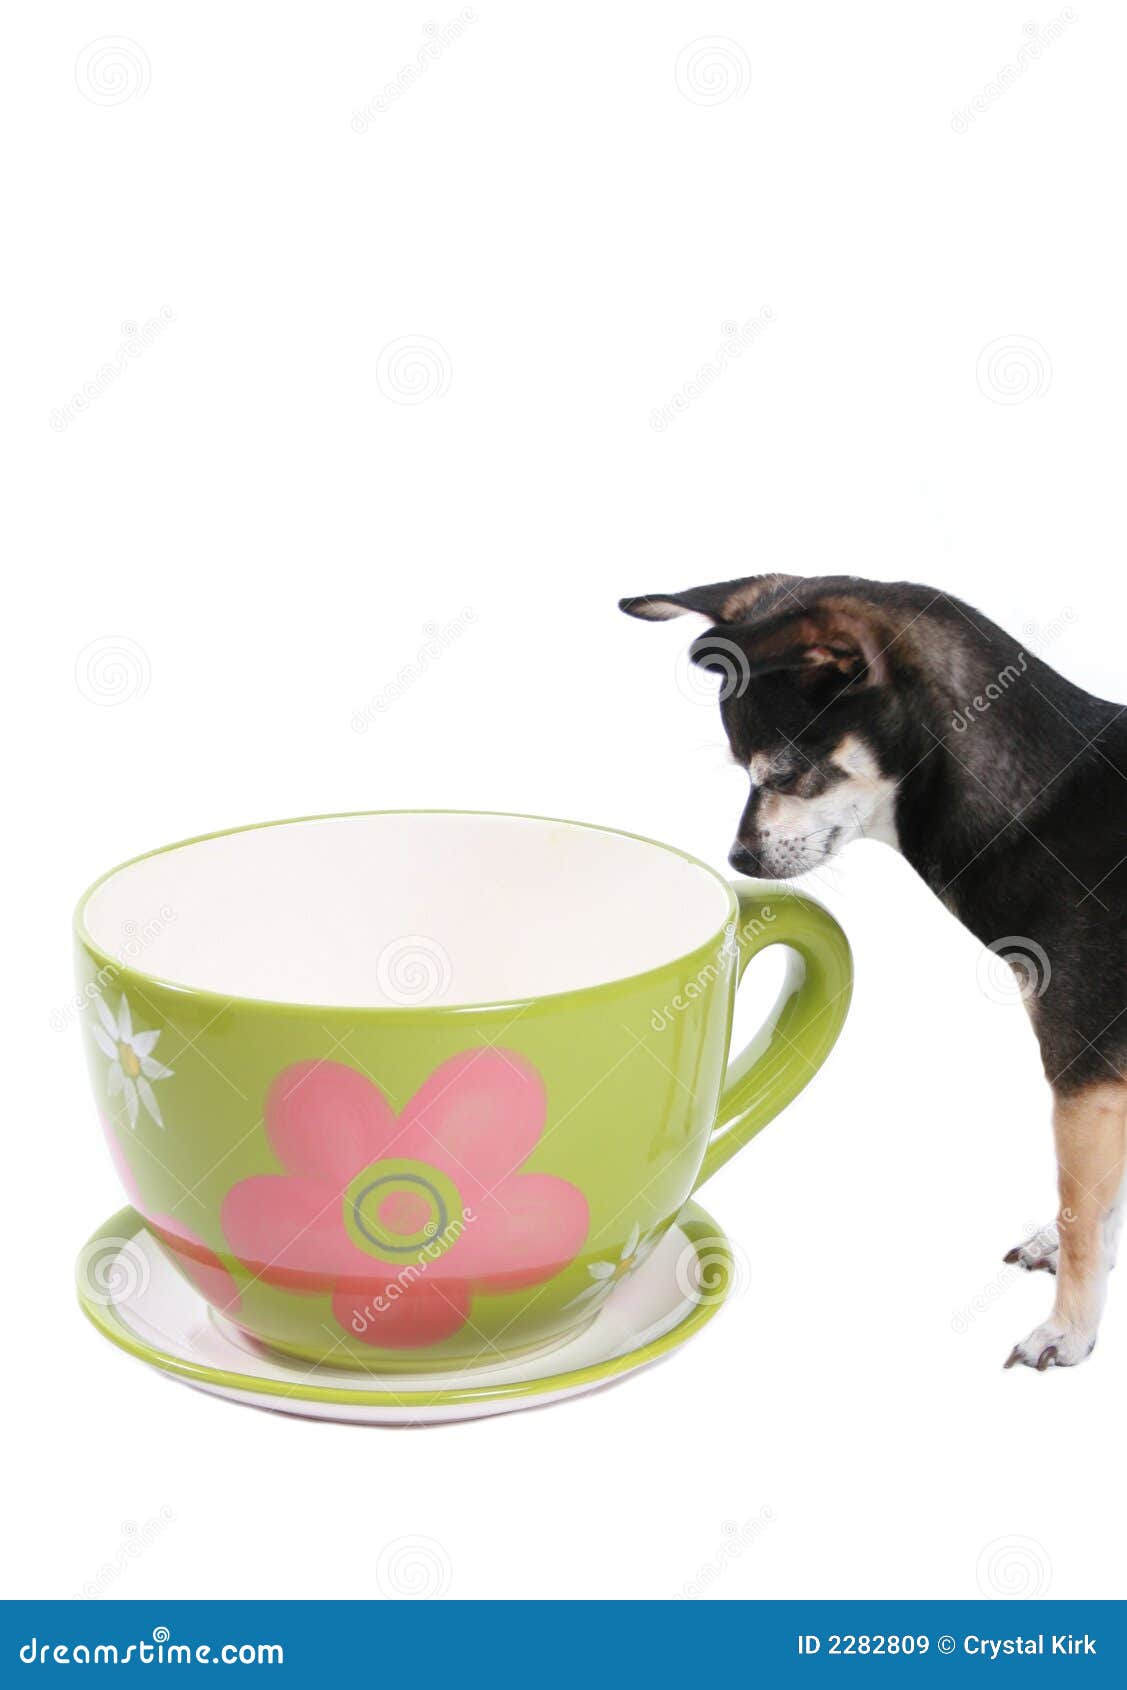 超级掌门狗创意礼物马克杯可爱卡通小狗杯送闺蜜大容量咖啡杯-阿里巴巴